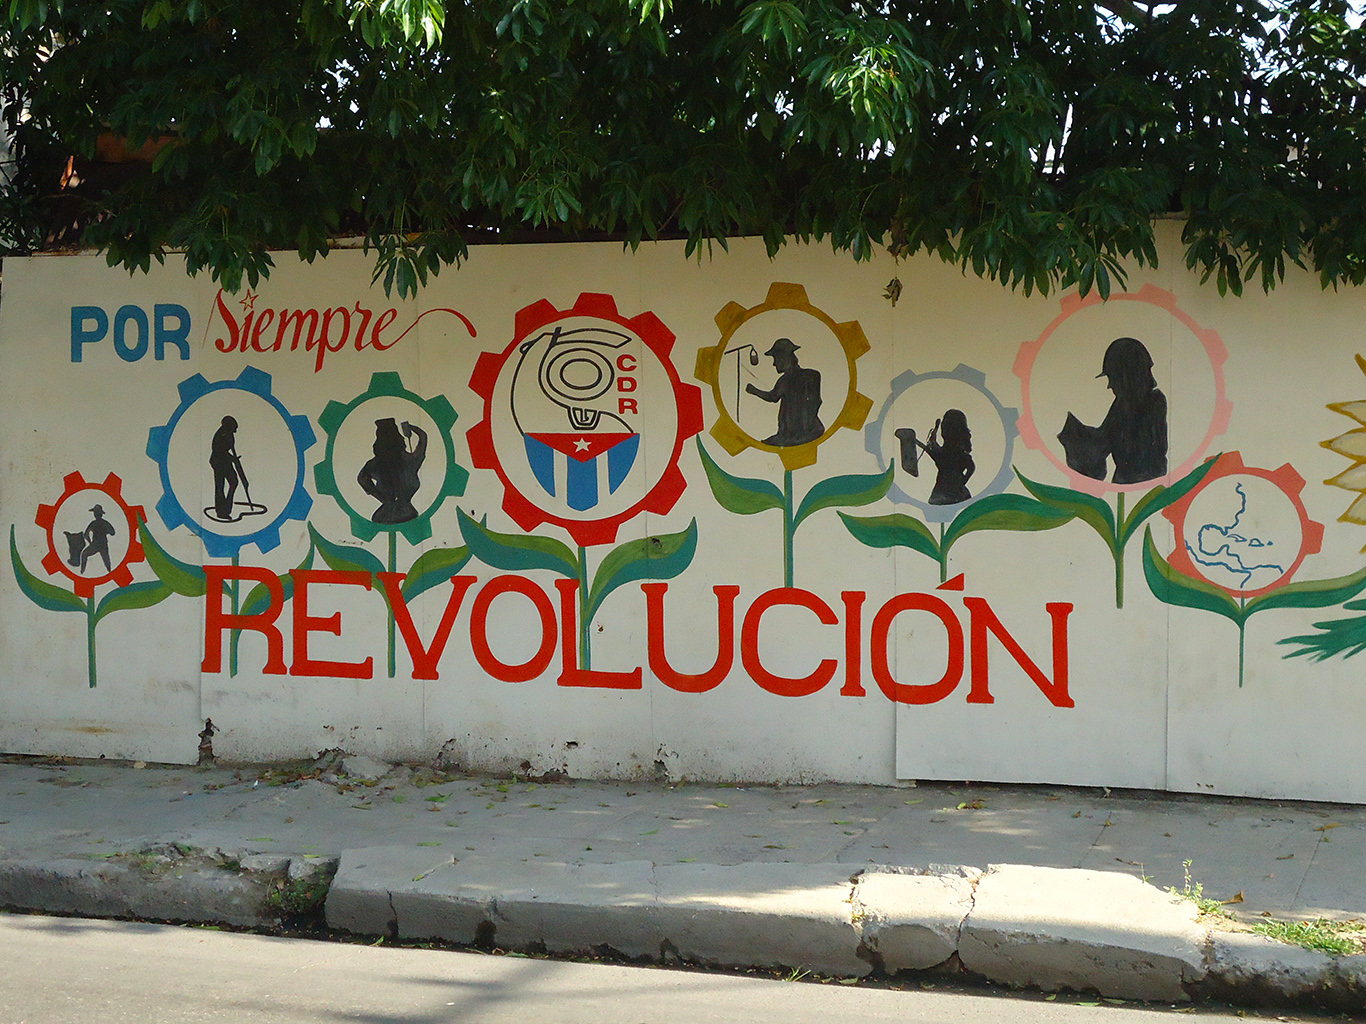 Nástěnná malba s heslem Revoluce navždy